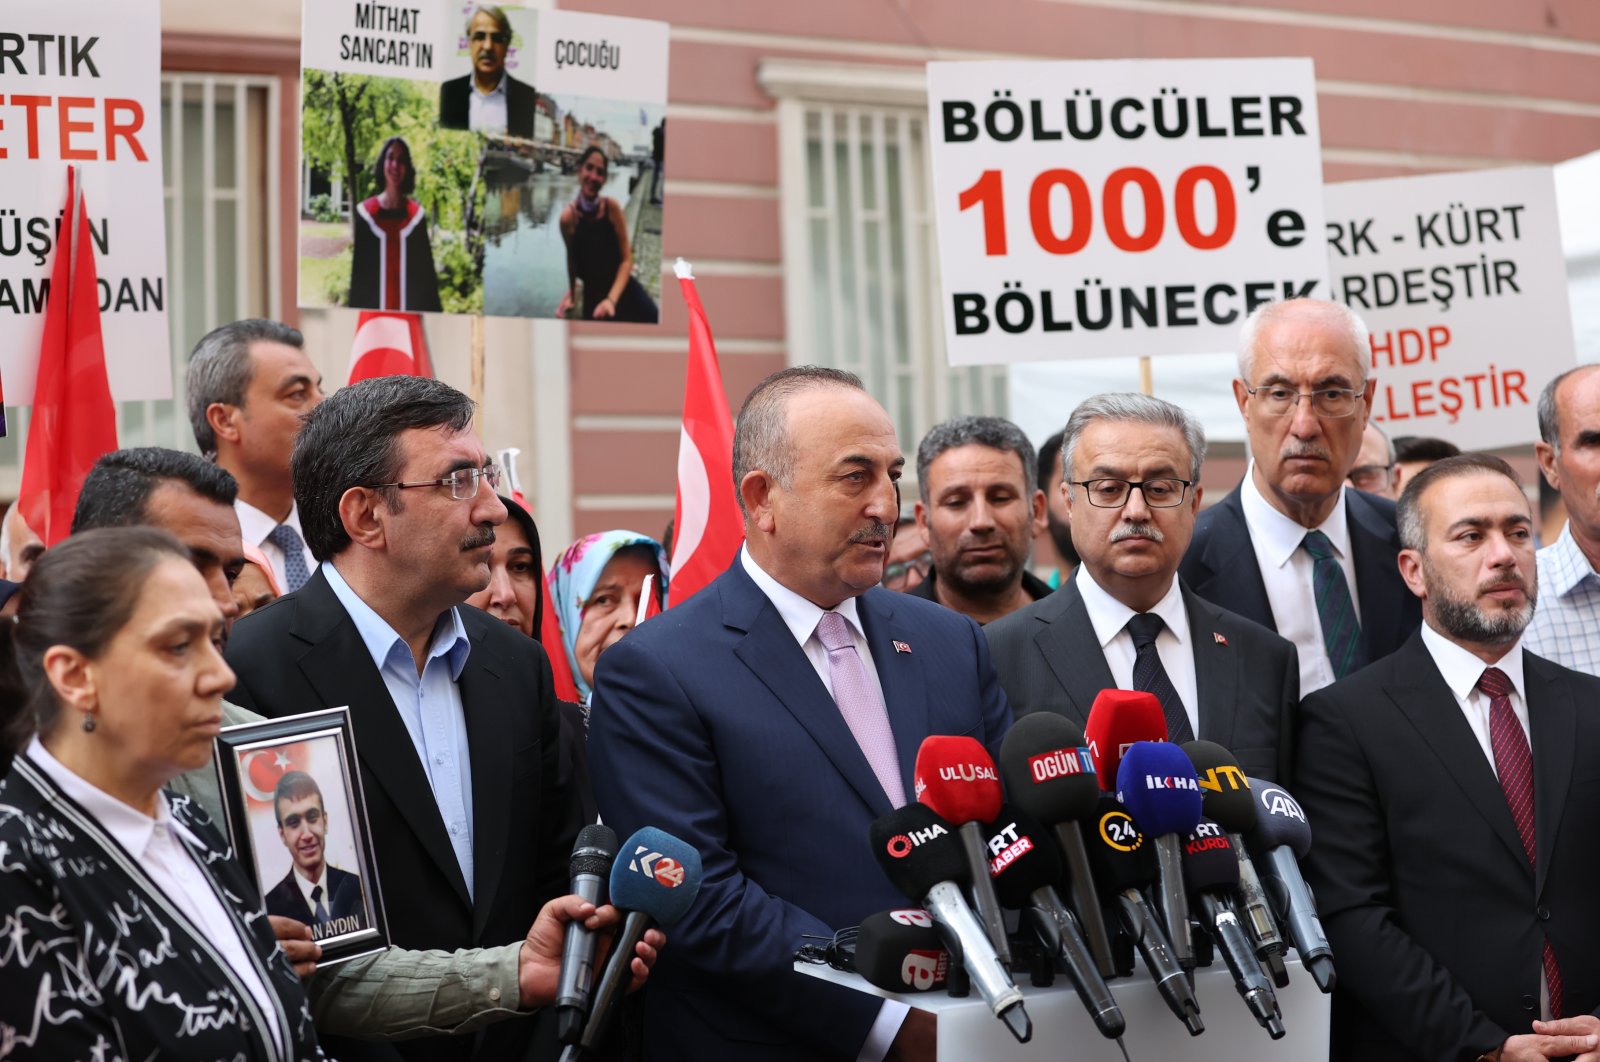 Ulkoministeri Mevlüt Çavuşoğlu vierailee Diyarbakırin vanhempien luona, jotka protestoivat PKK:ta kannattavan HDP:n päämajan edessä 13. kesäkuuta 2022. (AA-kuva)